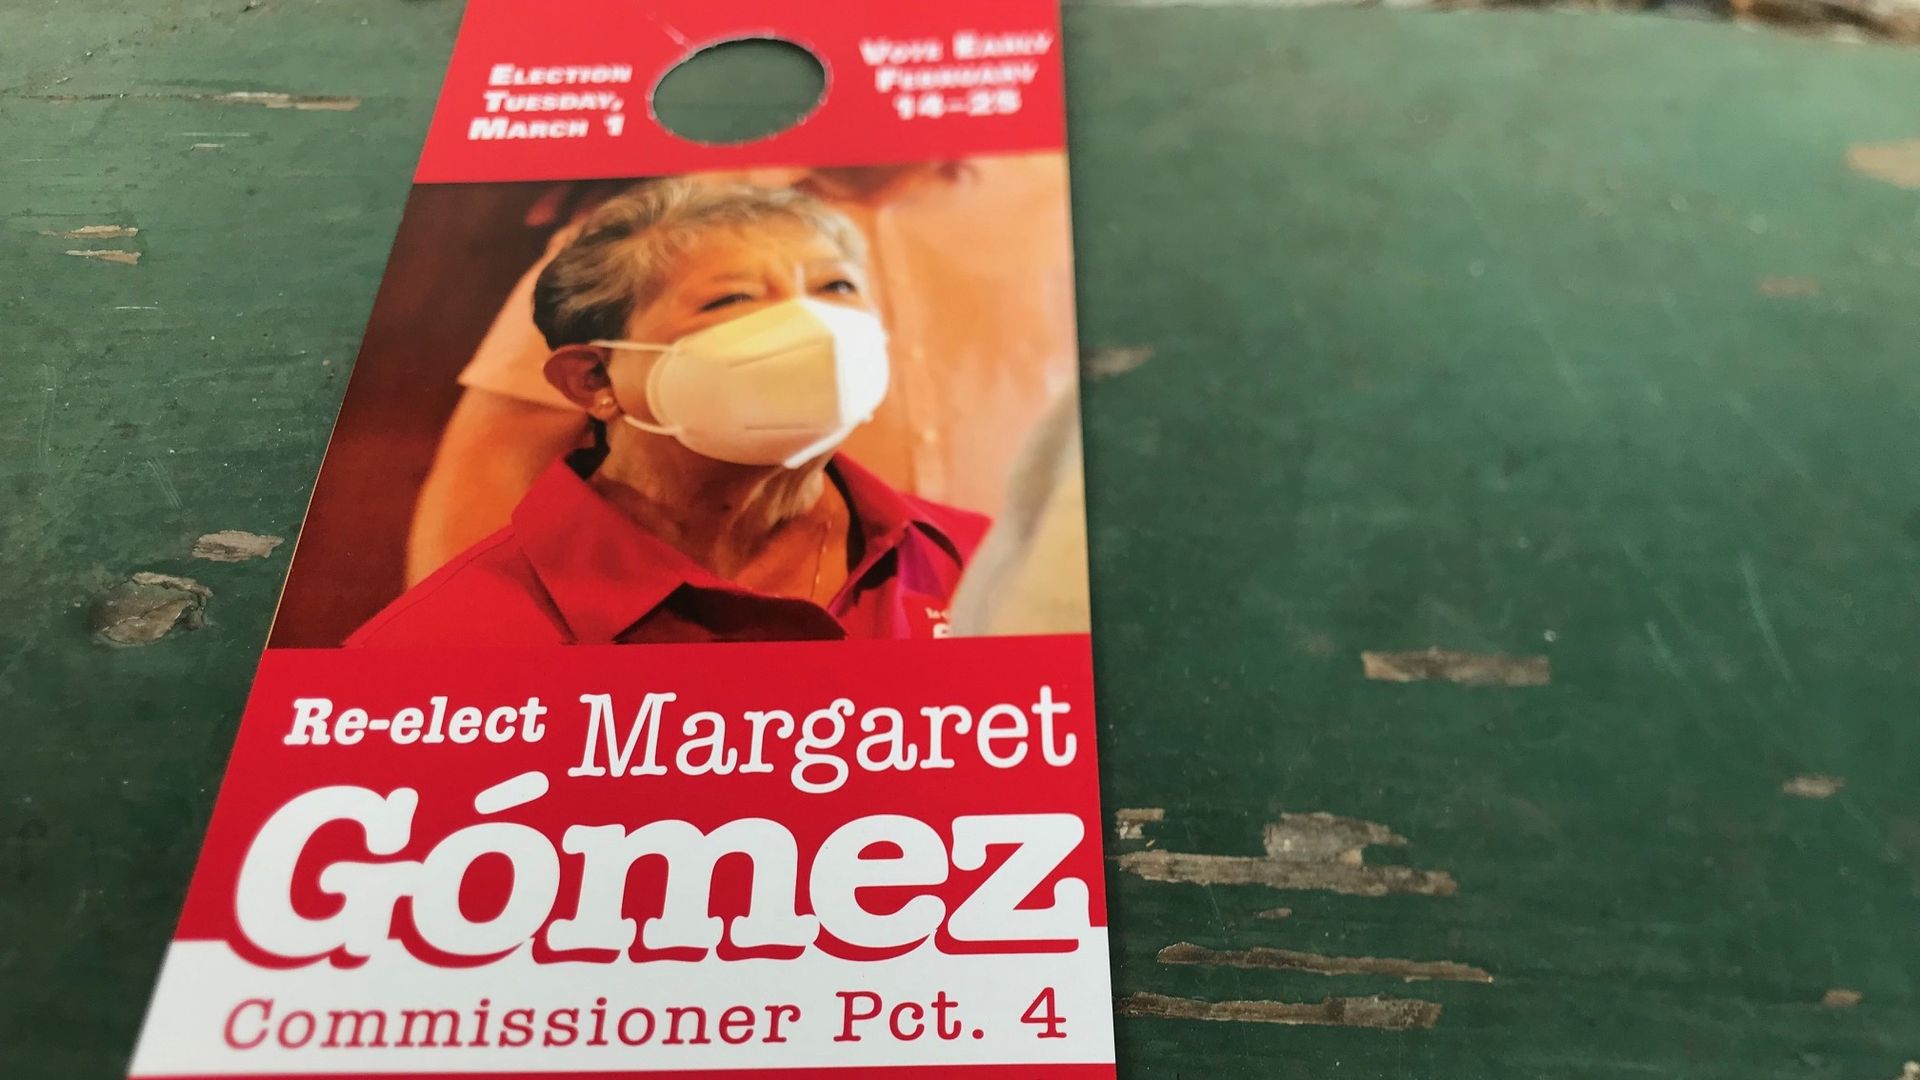 An image of a door mailer from Margaret Gomez.